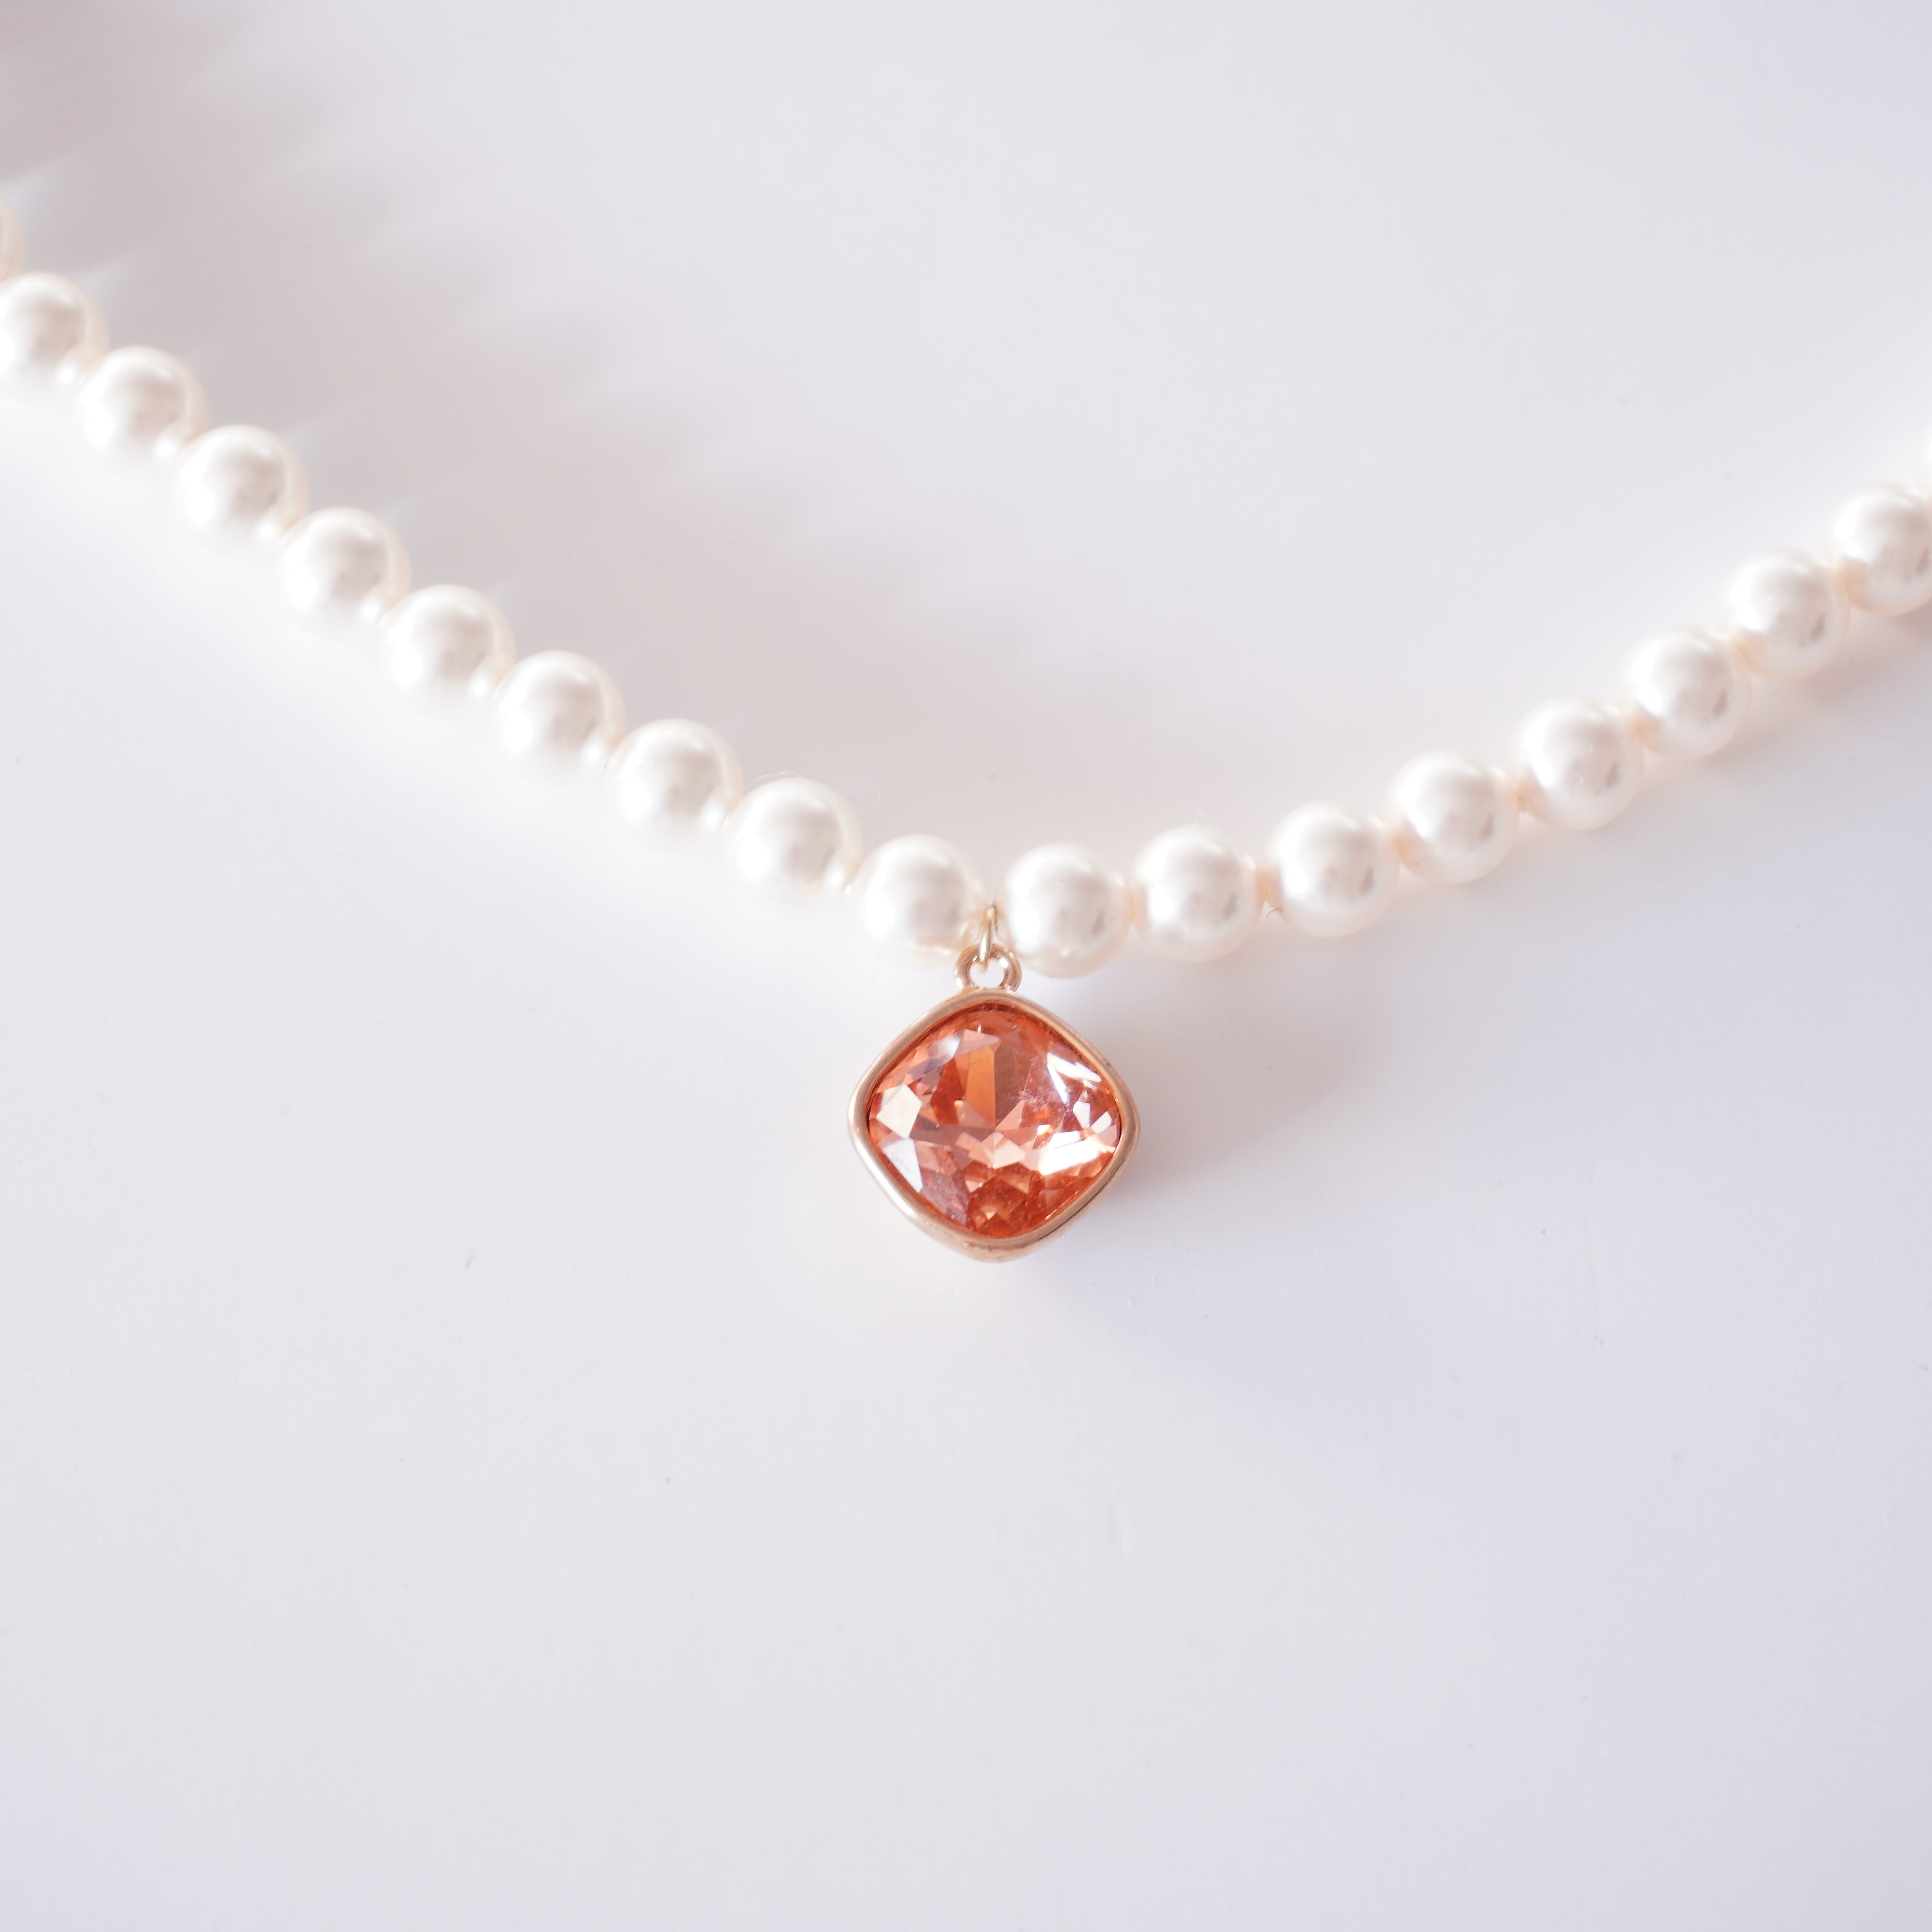 VIVIENNE WESTWOOD Necklace ARIELLA Pink Gold Zirconia Chain 40-45cm Japan |  eBay